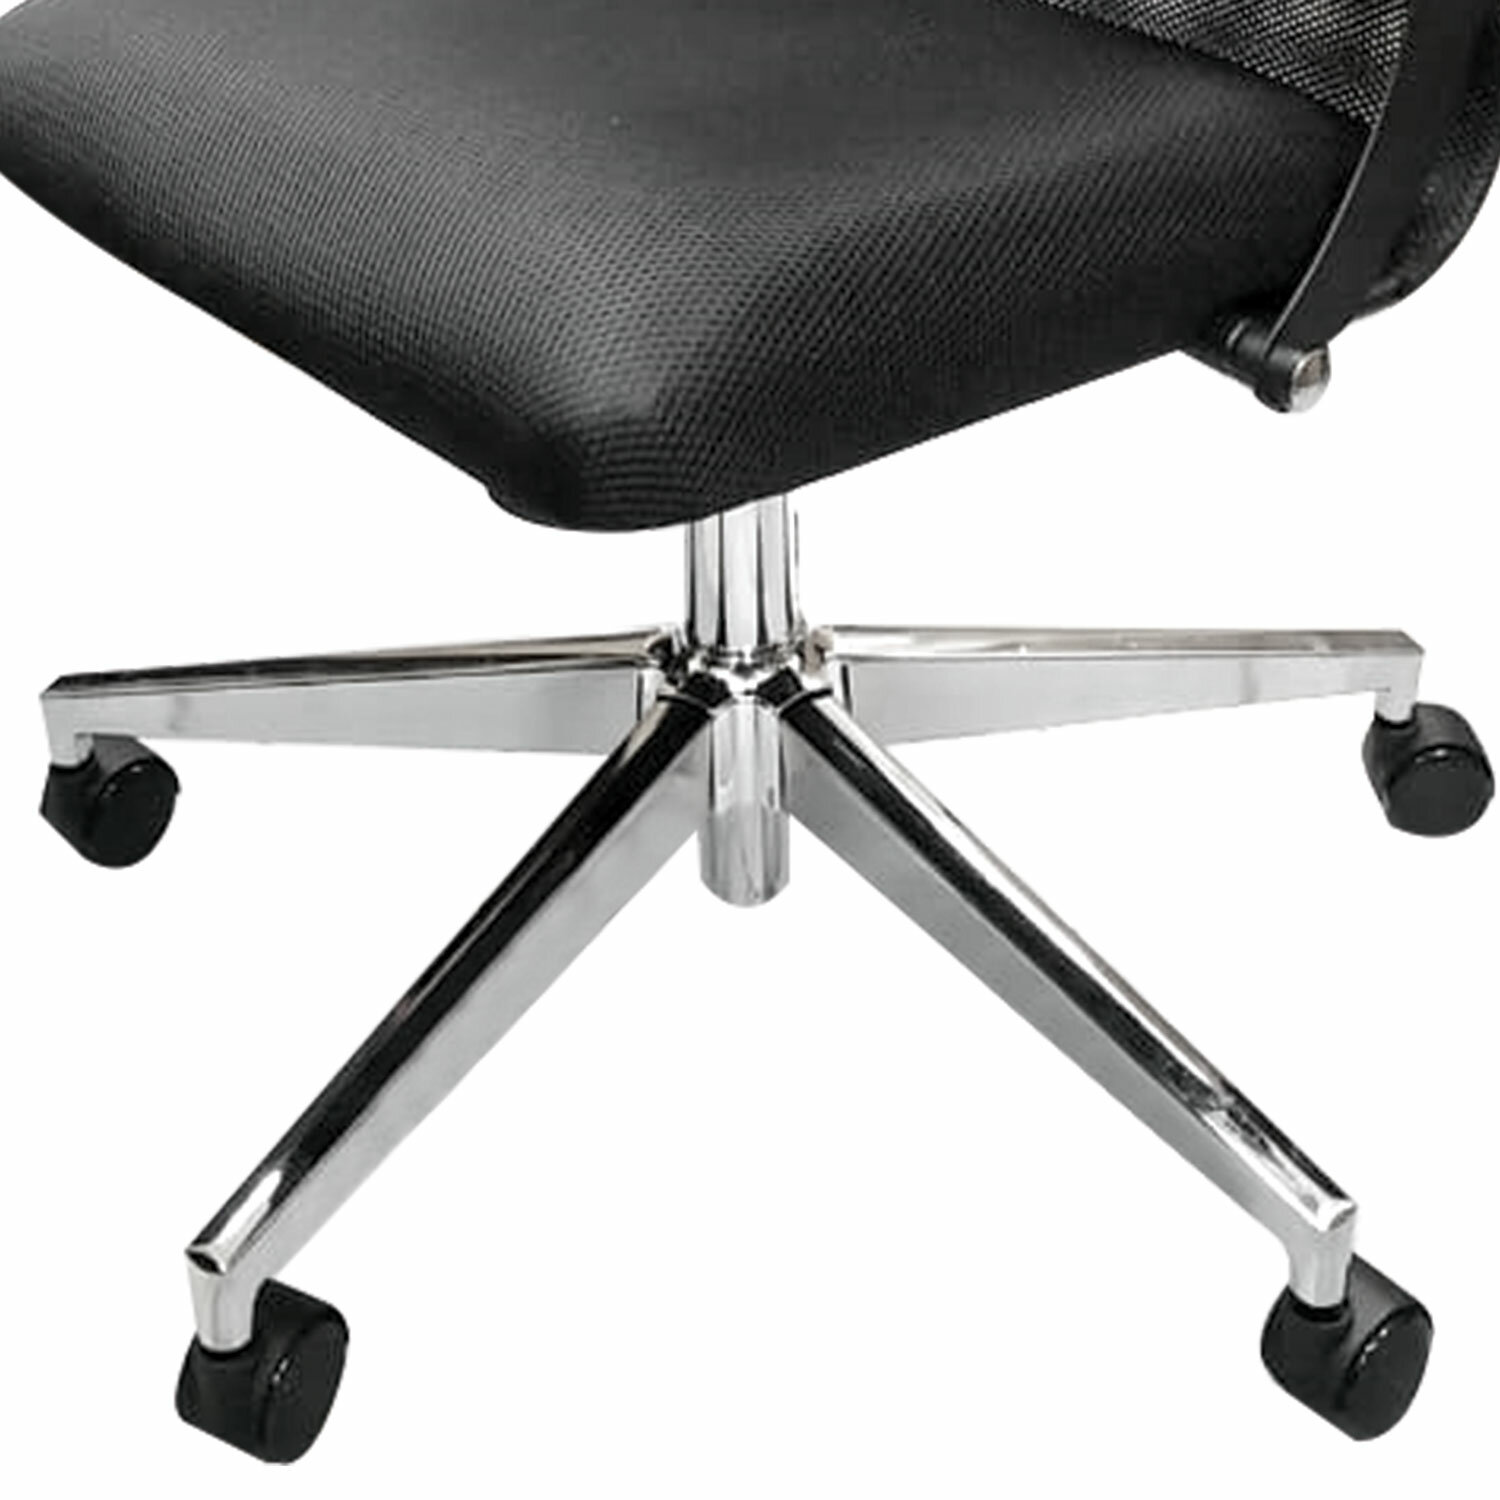 Кресло офисное Метта "К-34" хром, рецик, кожа, подголовник, сиденье и спинка мягкие, белое фото